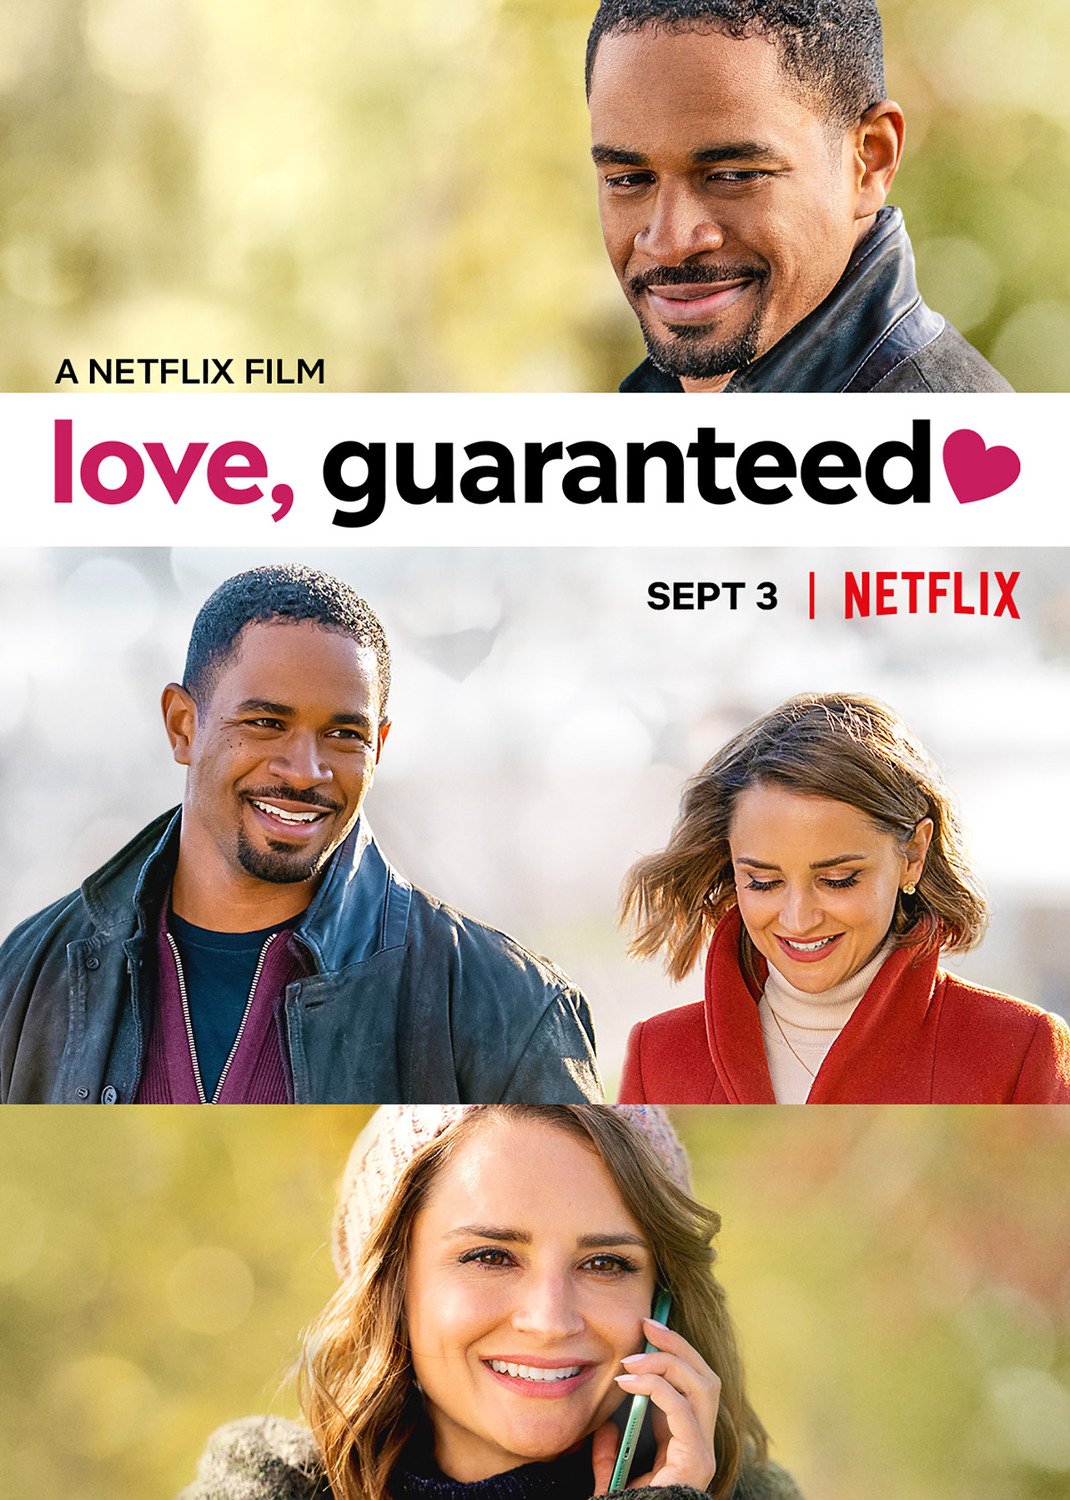 Netflix deines die liebe lebens Beste romantische